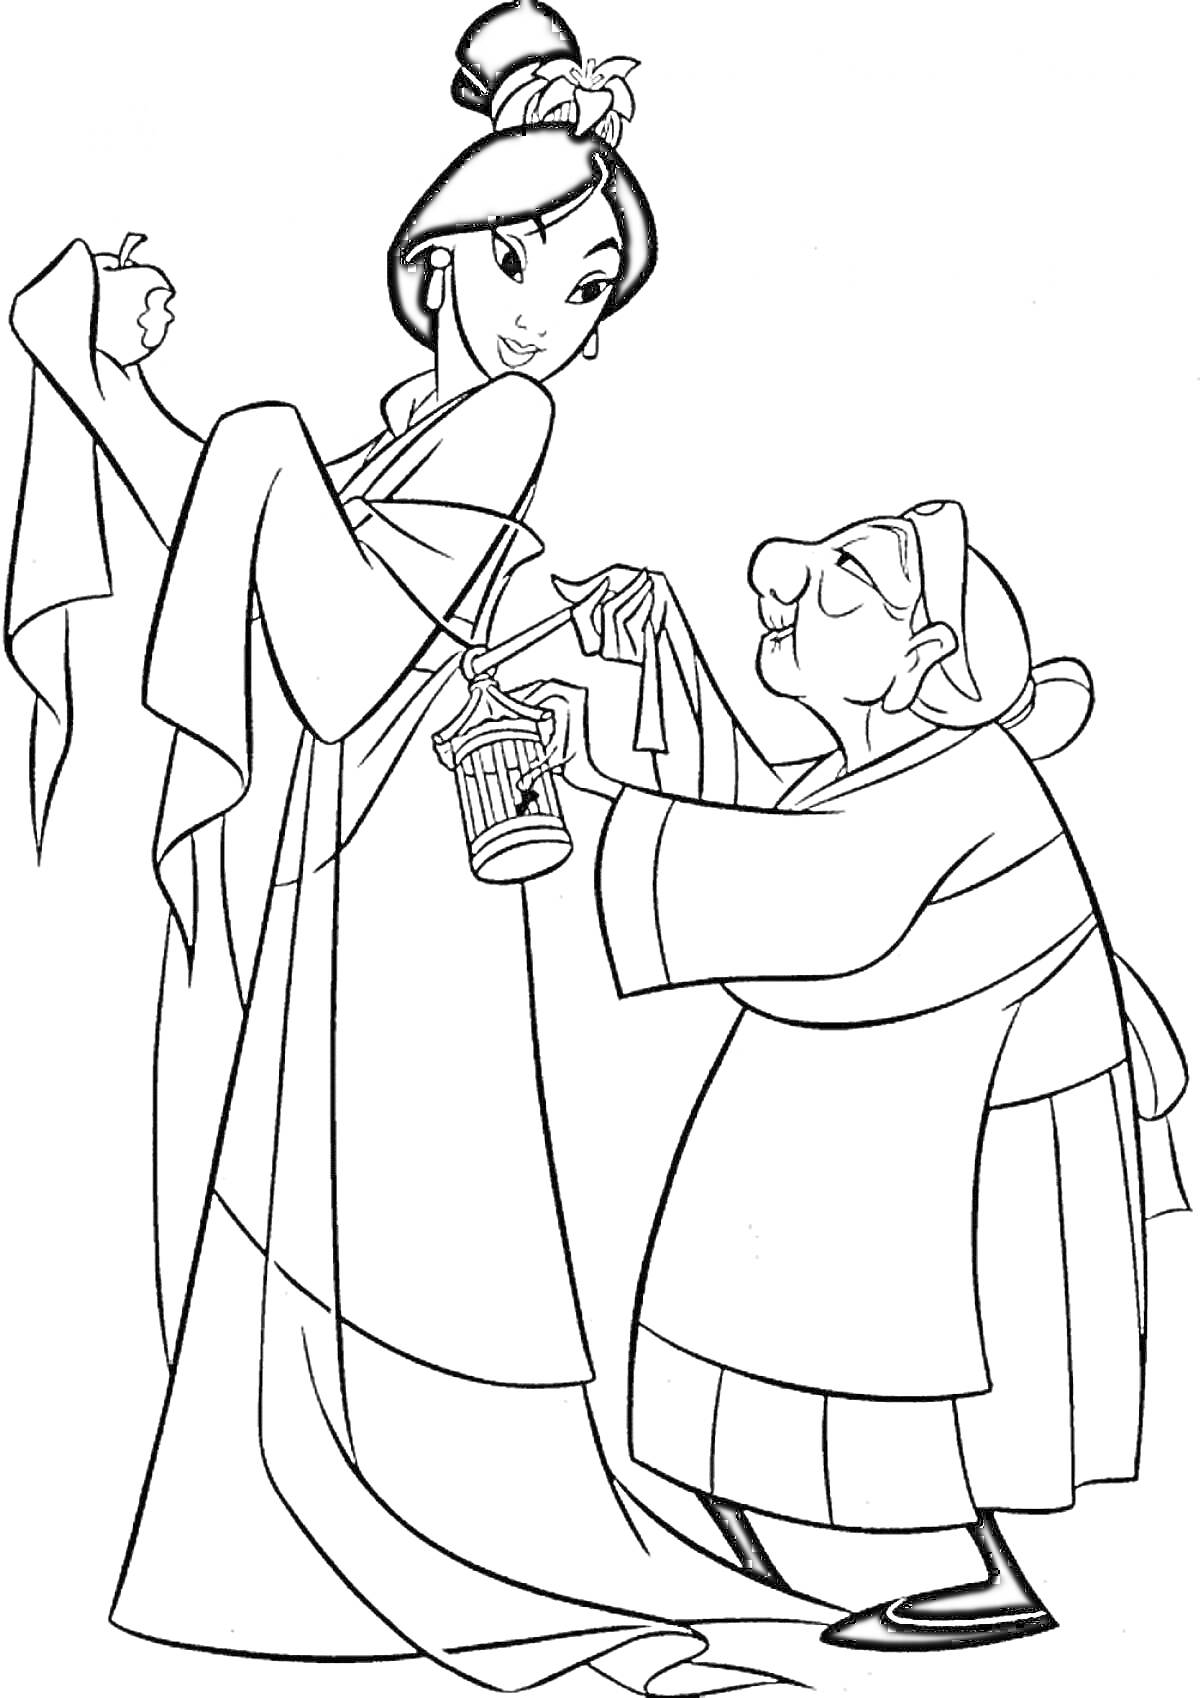 Мулан с яблоком в руке рядом с пожилой женщиной в традиционной одежде, держащей клетку с сверчком